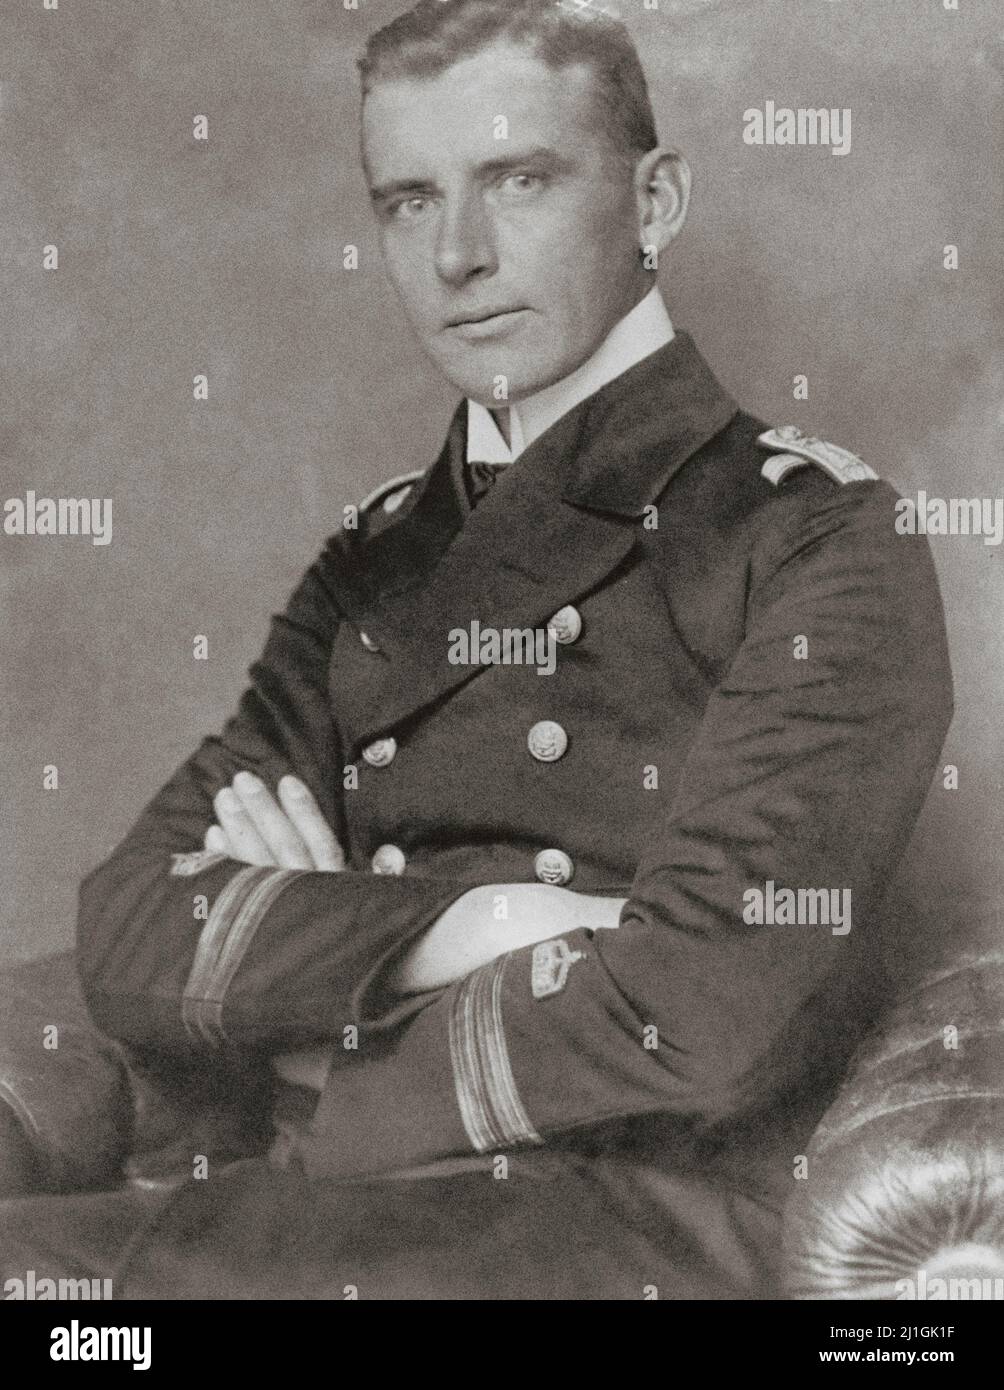 Portrait vintage de Hellmuth von Mücke. 1916 Hellmuth von Mücke (1881 – 1957) est un premier lieutenant du Light Cruiser allemand SMS Emden du Kai Banque D'Images